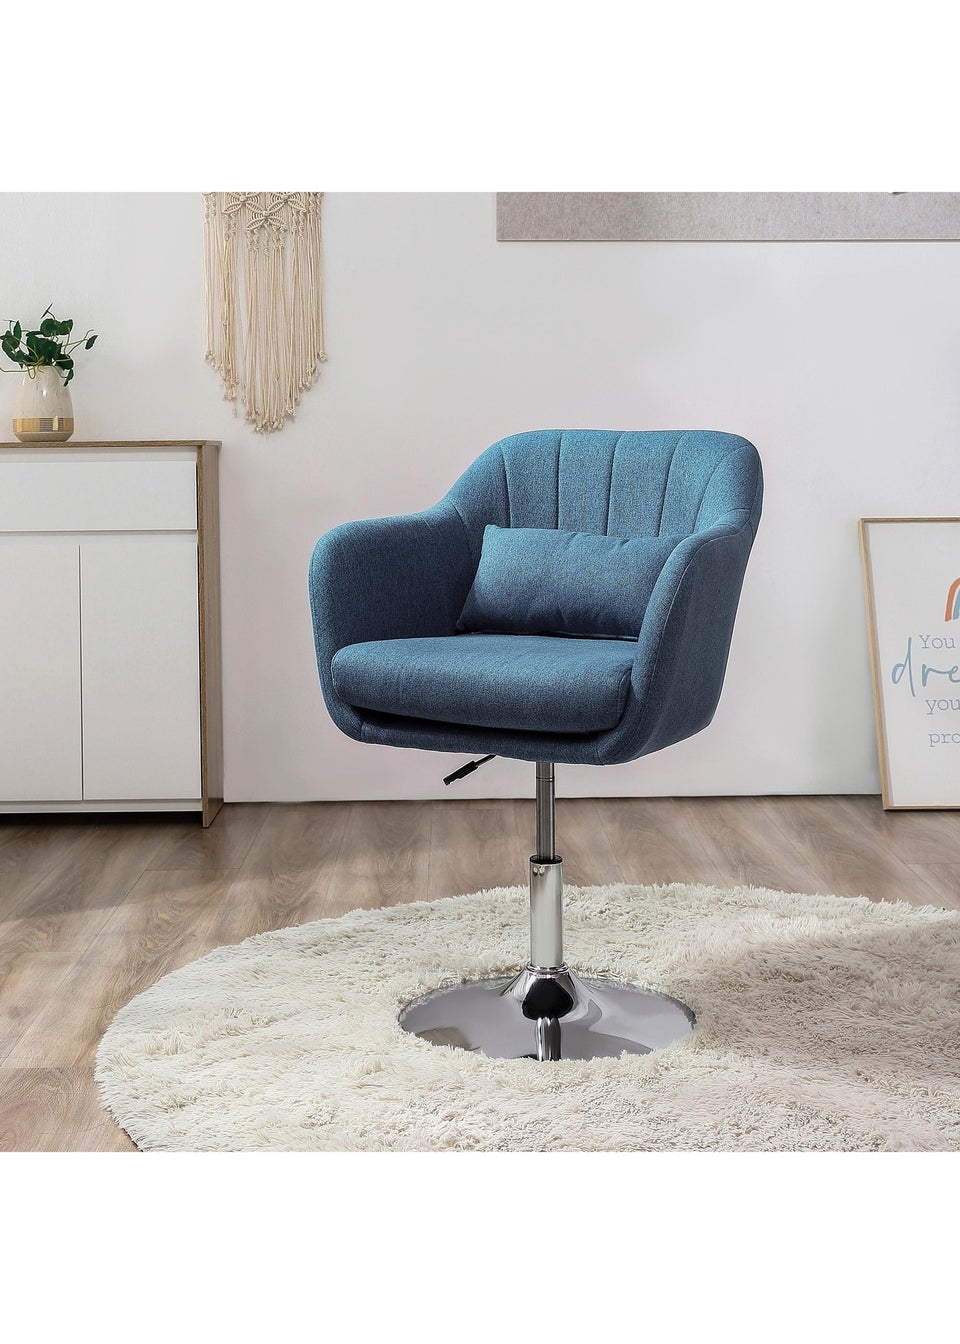 HOMCOM Blue Stylish Retro Linen Swivel Tub Chair (60cm x 60cm x 91cm)